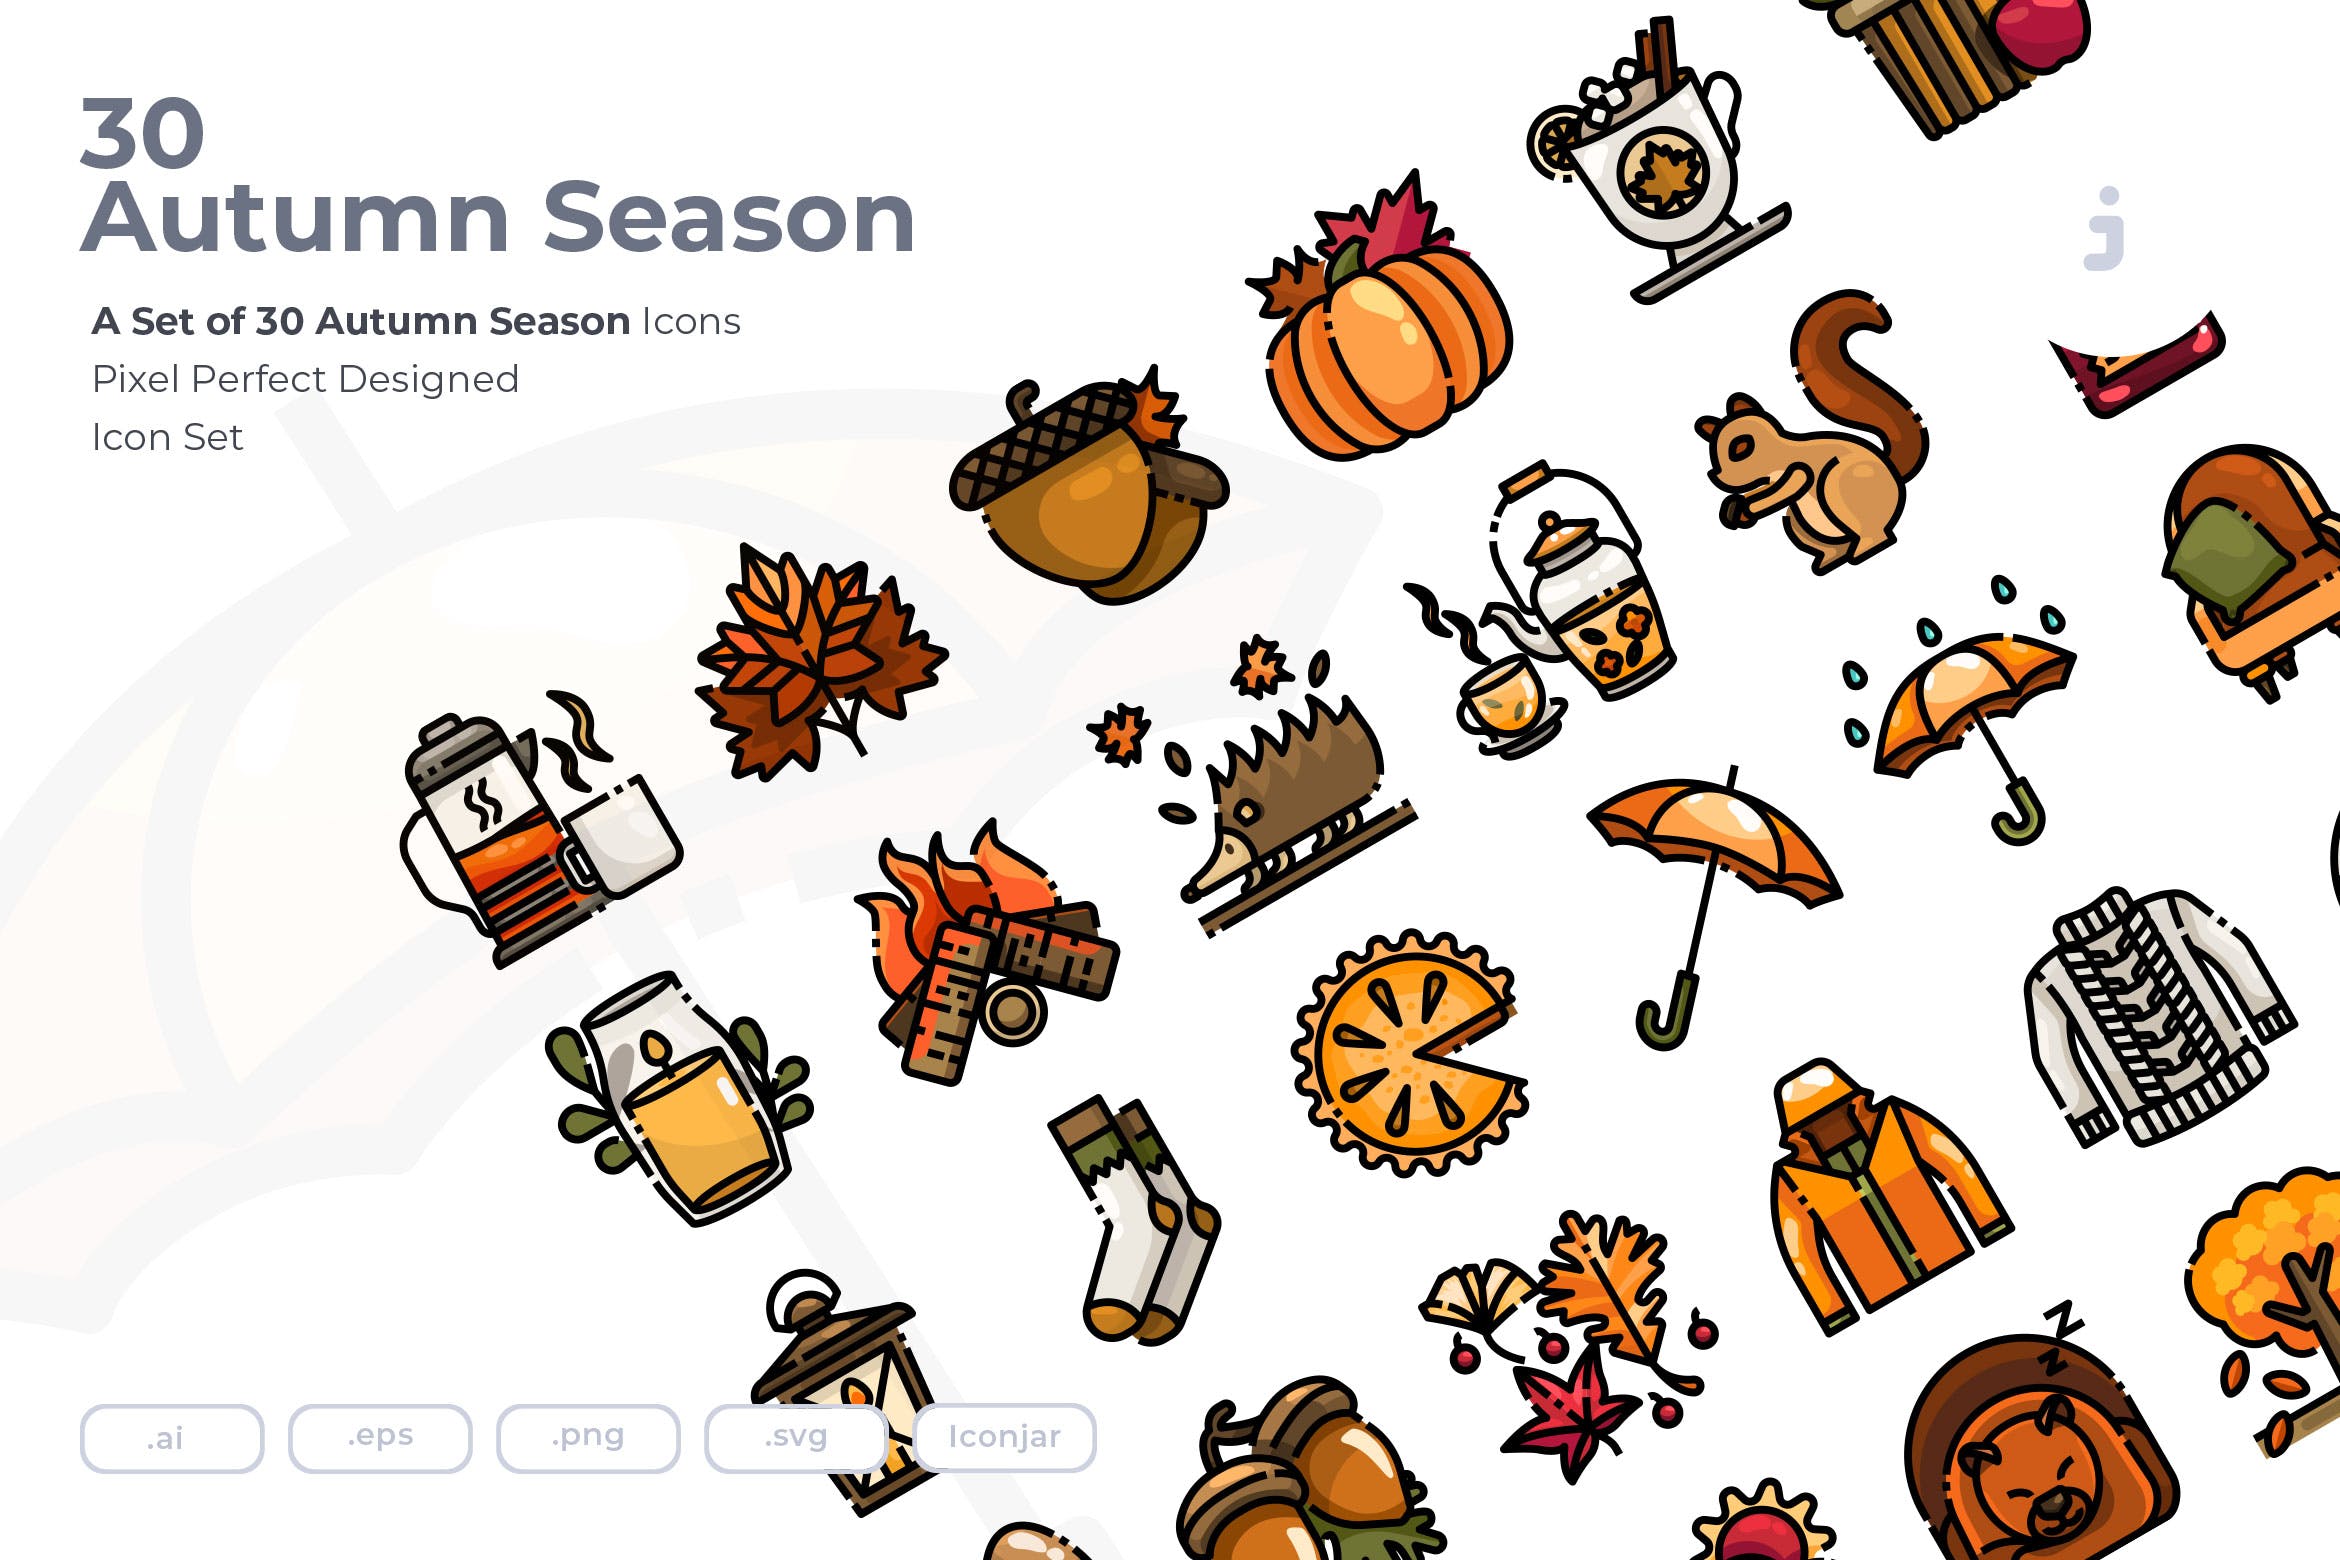  30个秋季元素图标源文件下载30 Autumn Season Icons Hdkzfw4插图